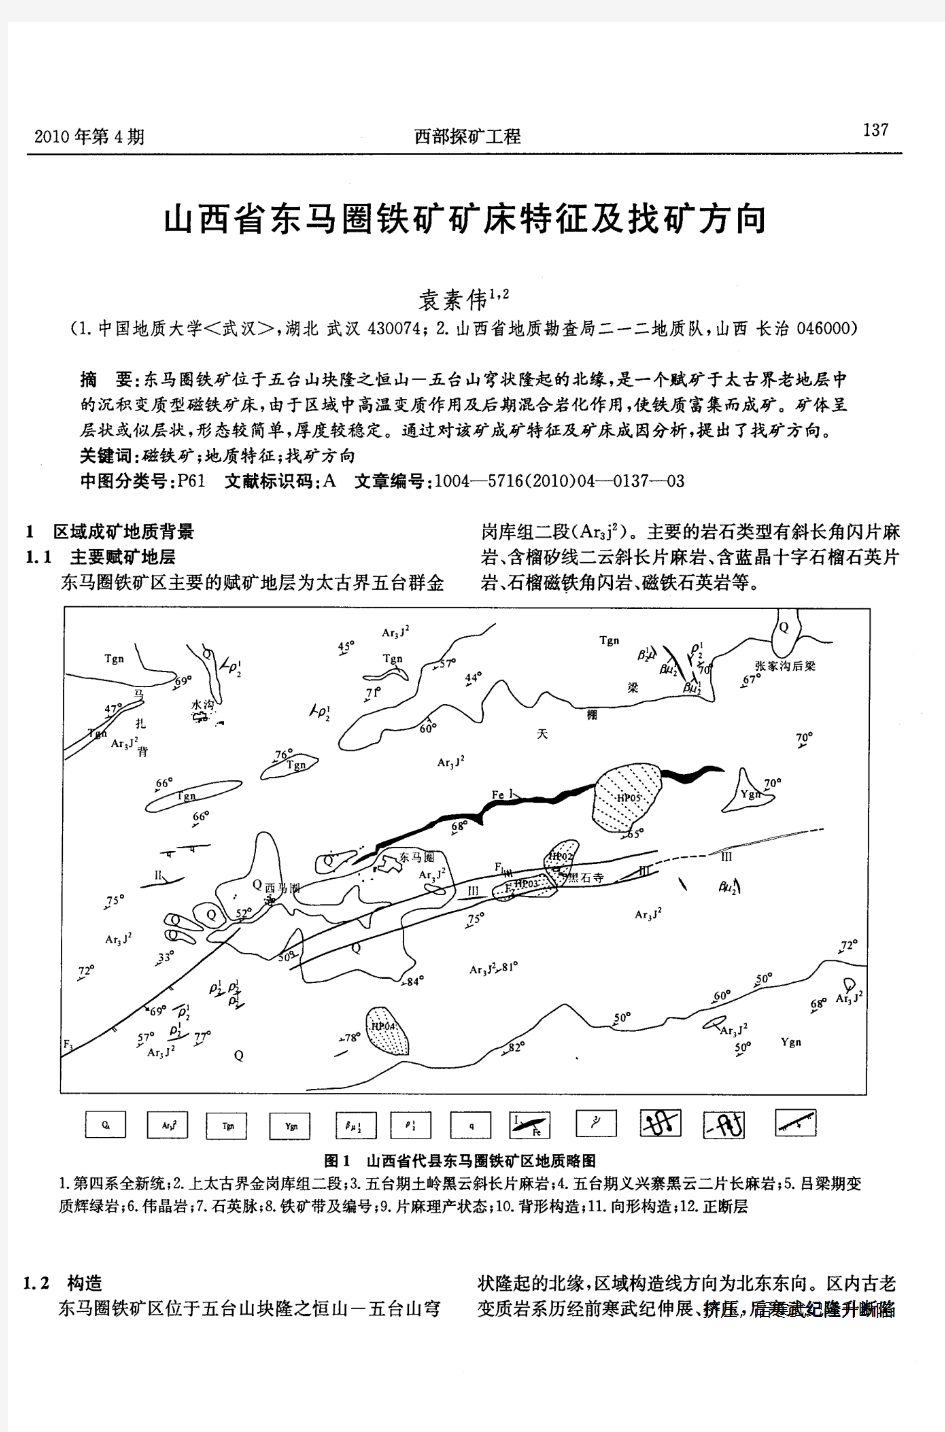 山西省东马圈铁矿矿床特征及找矿方向